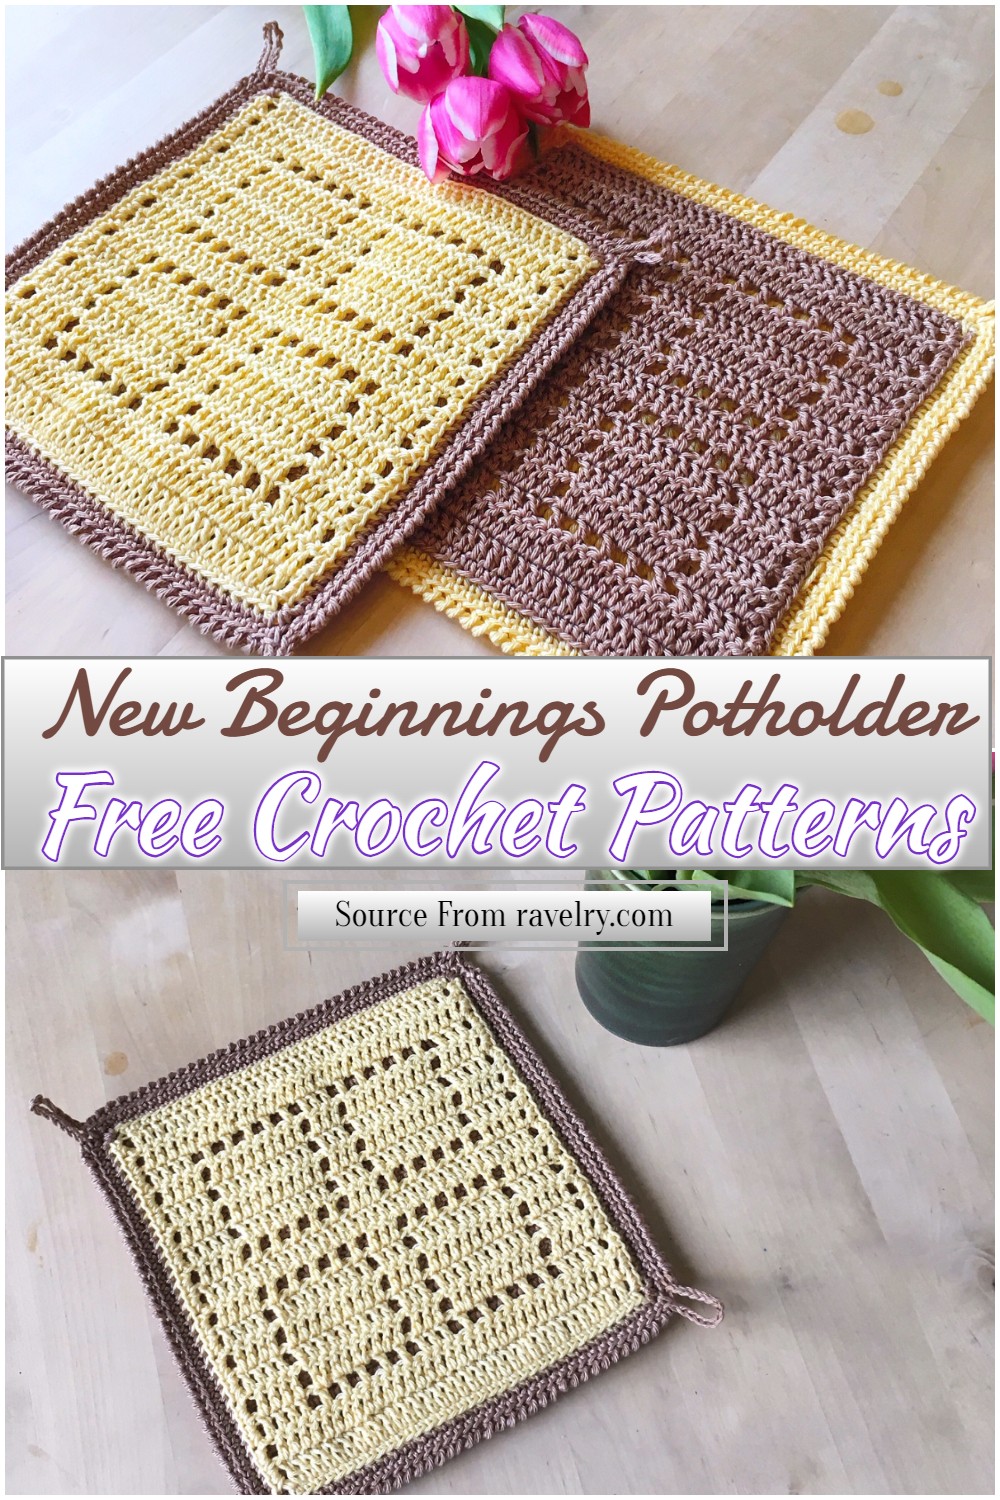 Free Crochet New Beginnings Potholder Pattern